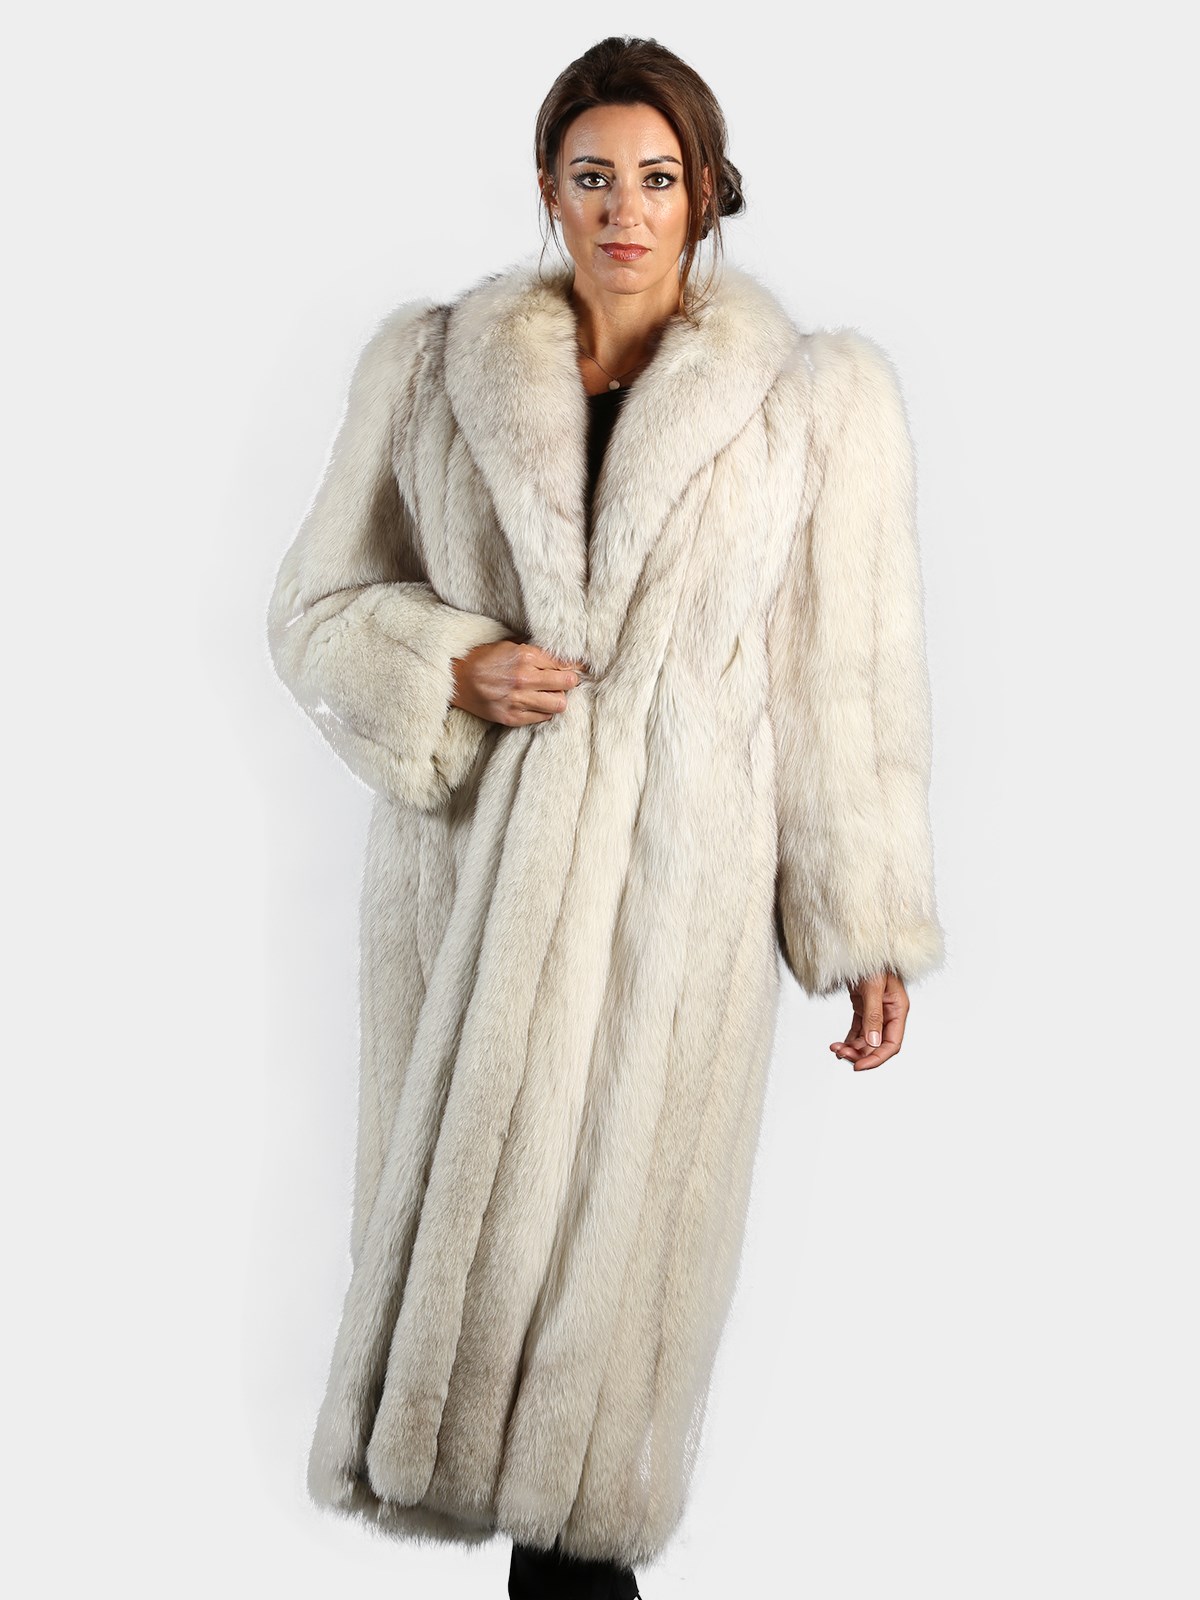 Women's Fur Coats and Mink Coats | Estate Furs